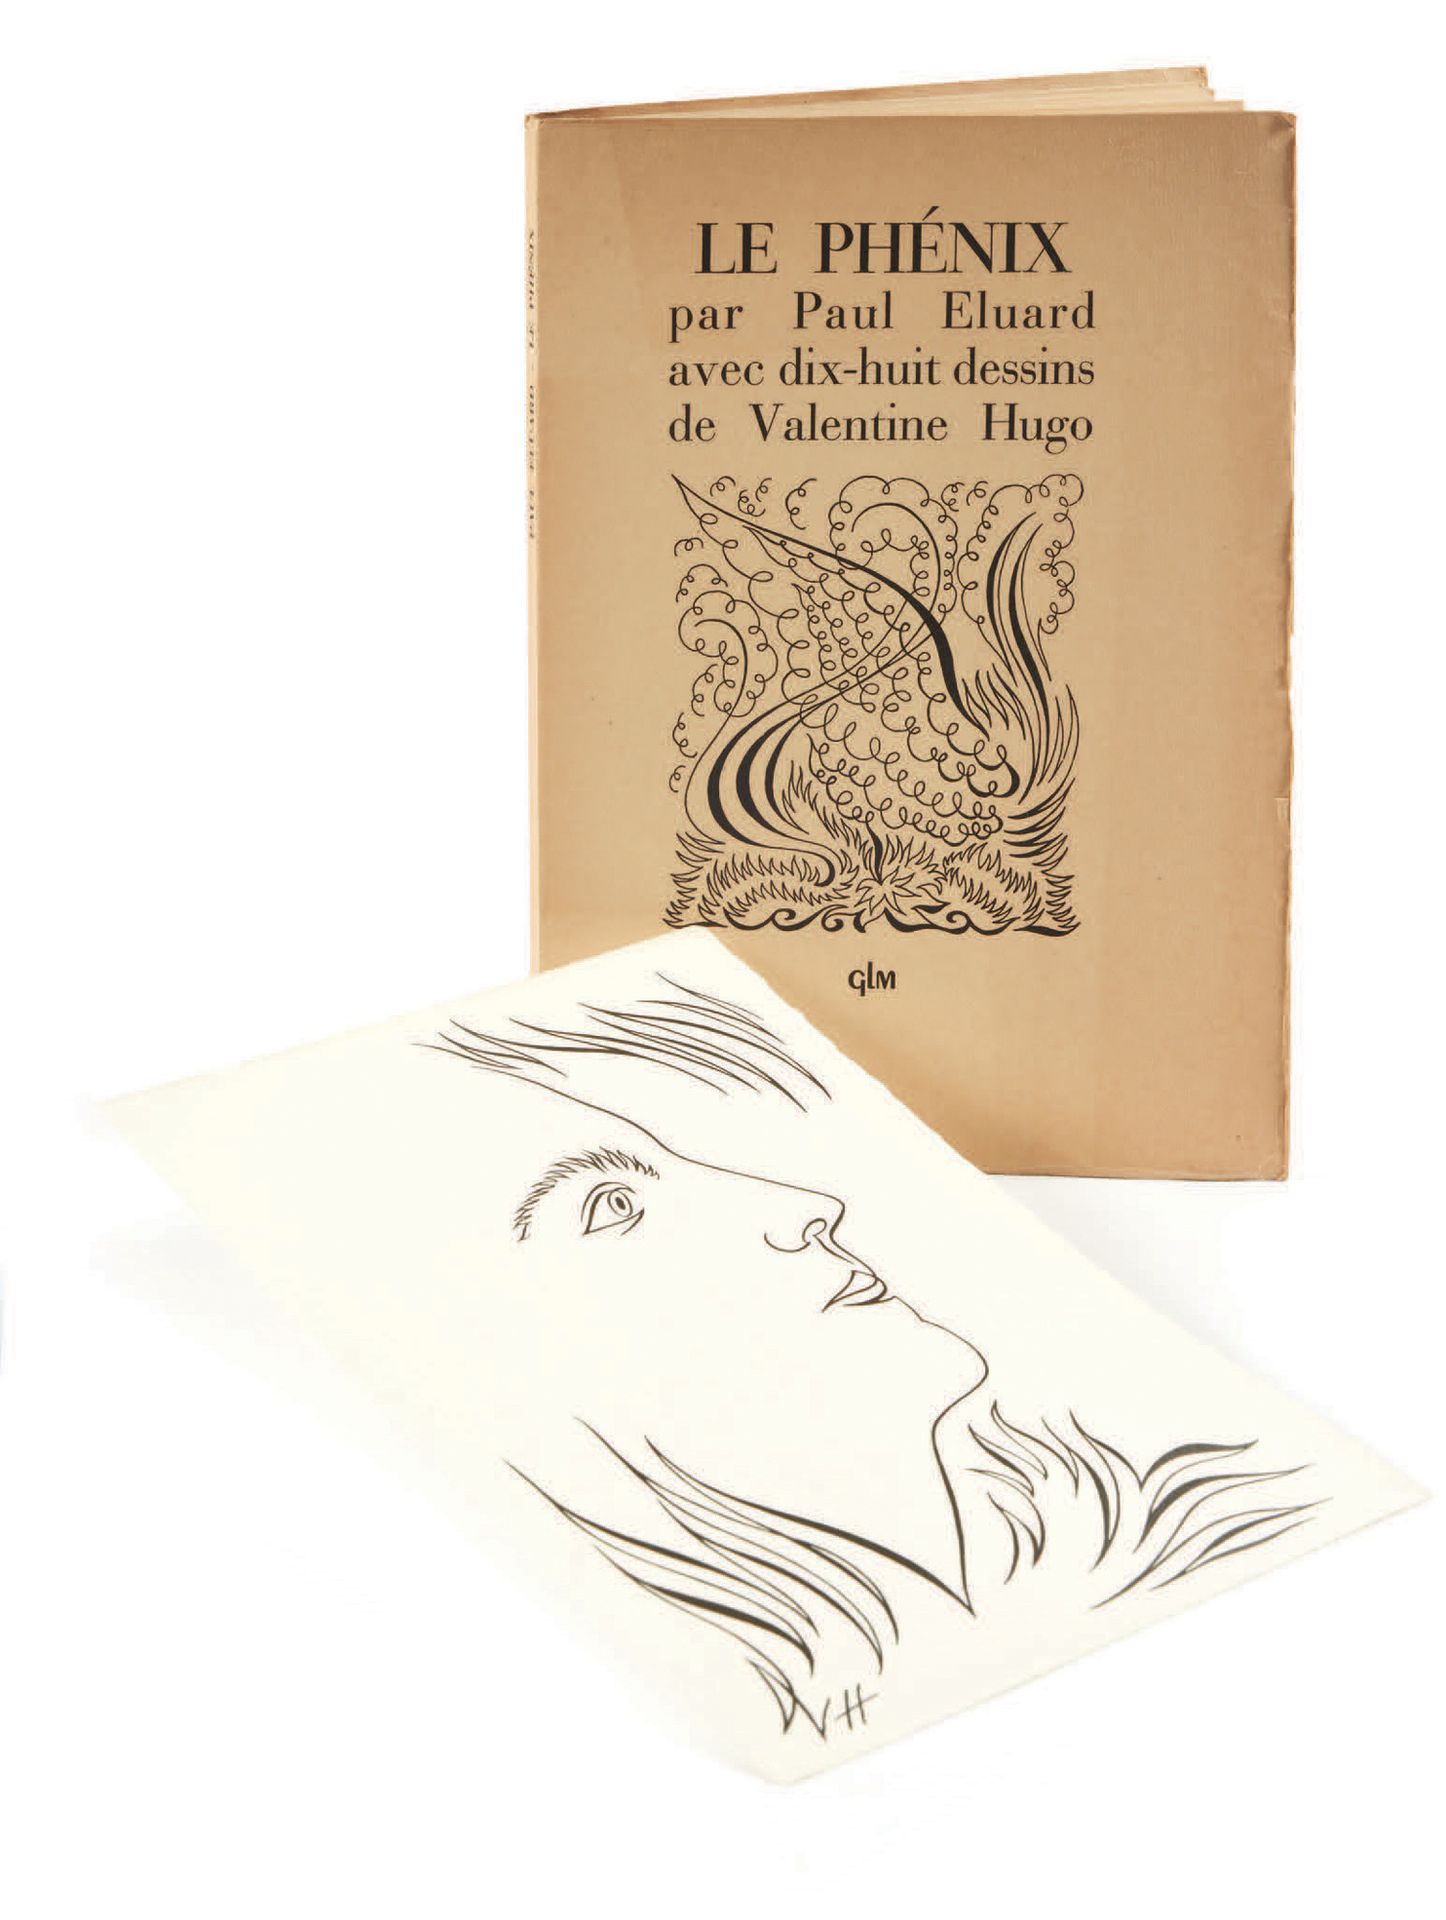 Paul Eluard. Le Phénix avec dix-huit dessins de Valentine Hugo. Paris, GLM, 1952&hellip;